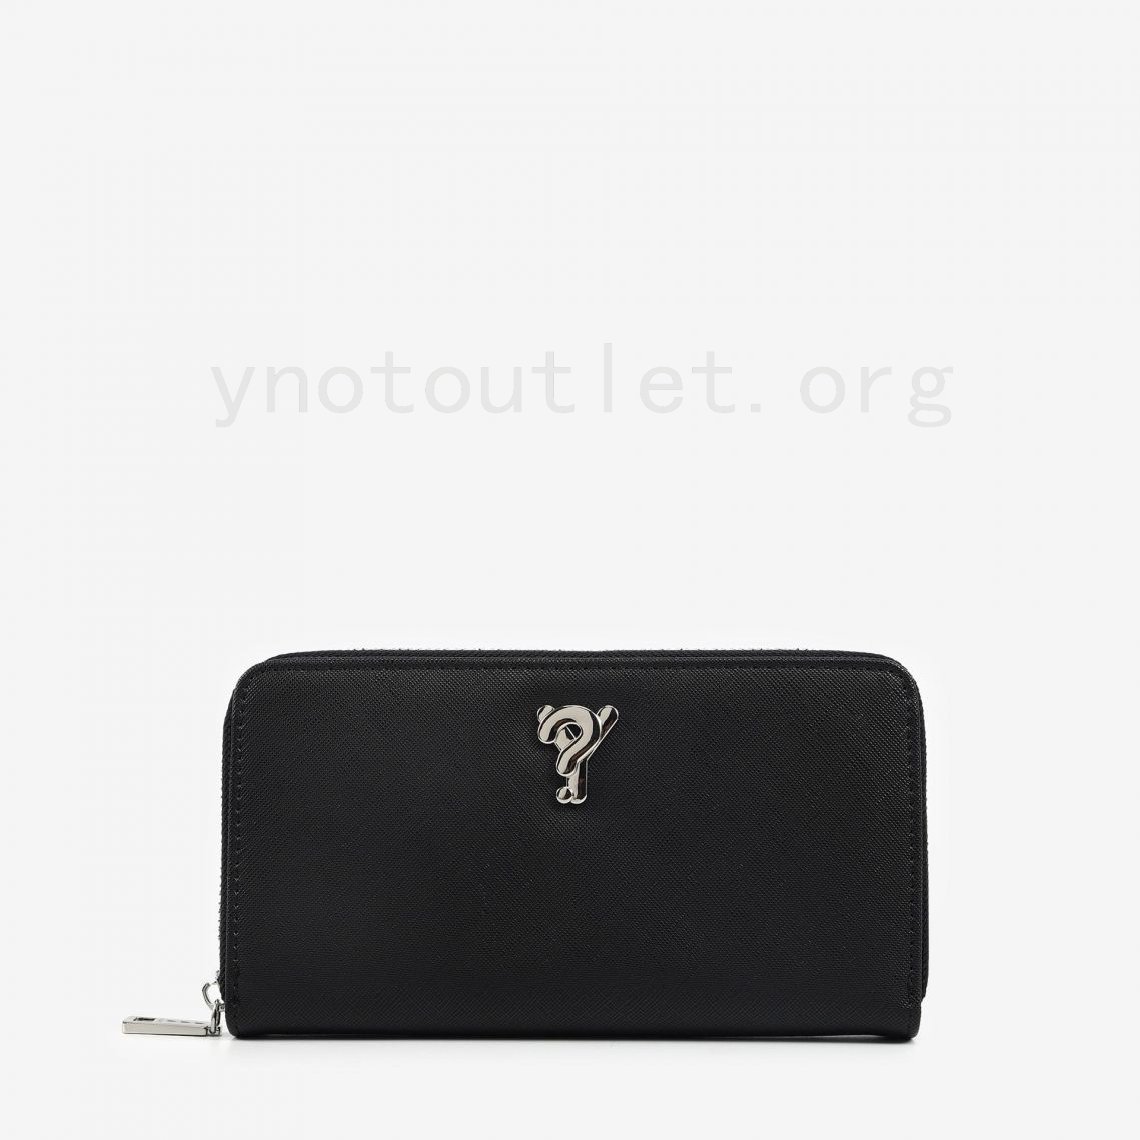 (image for) Portafogli Black borse online outlet